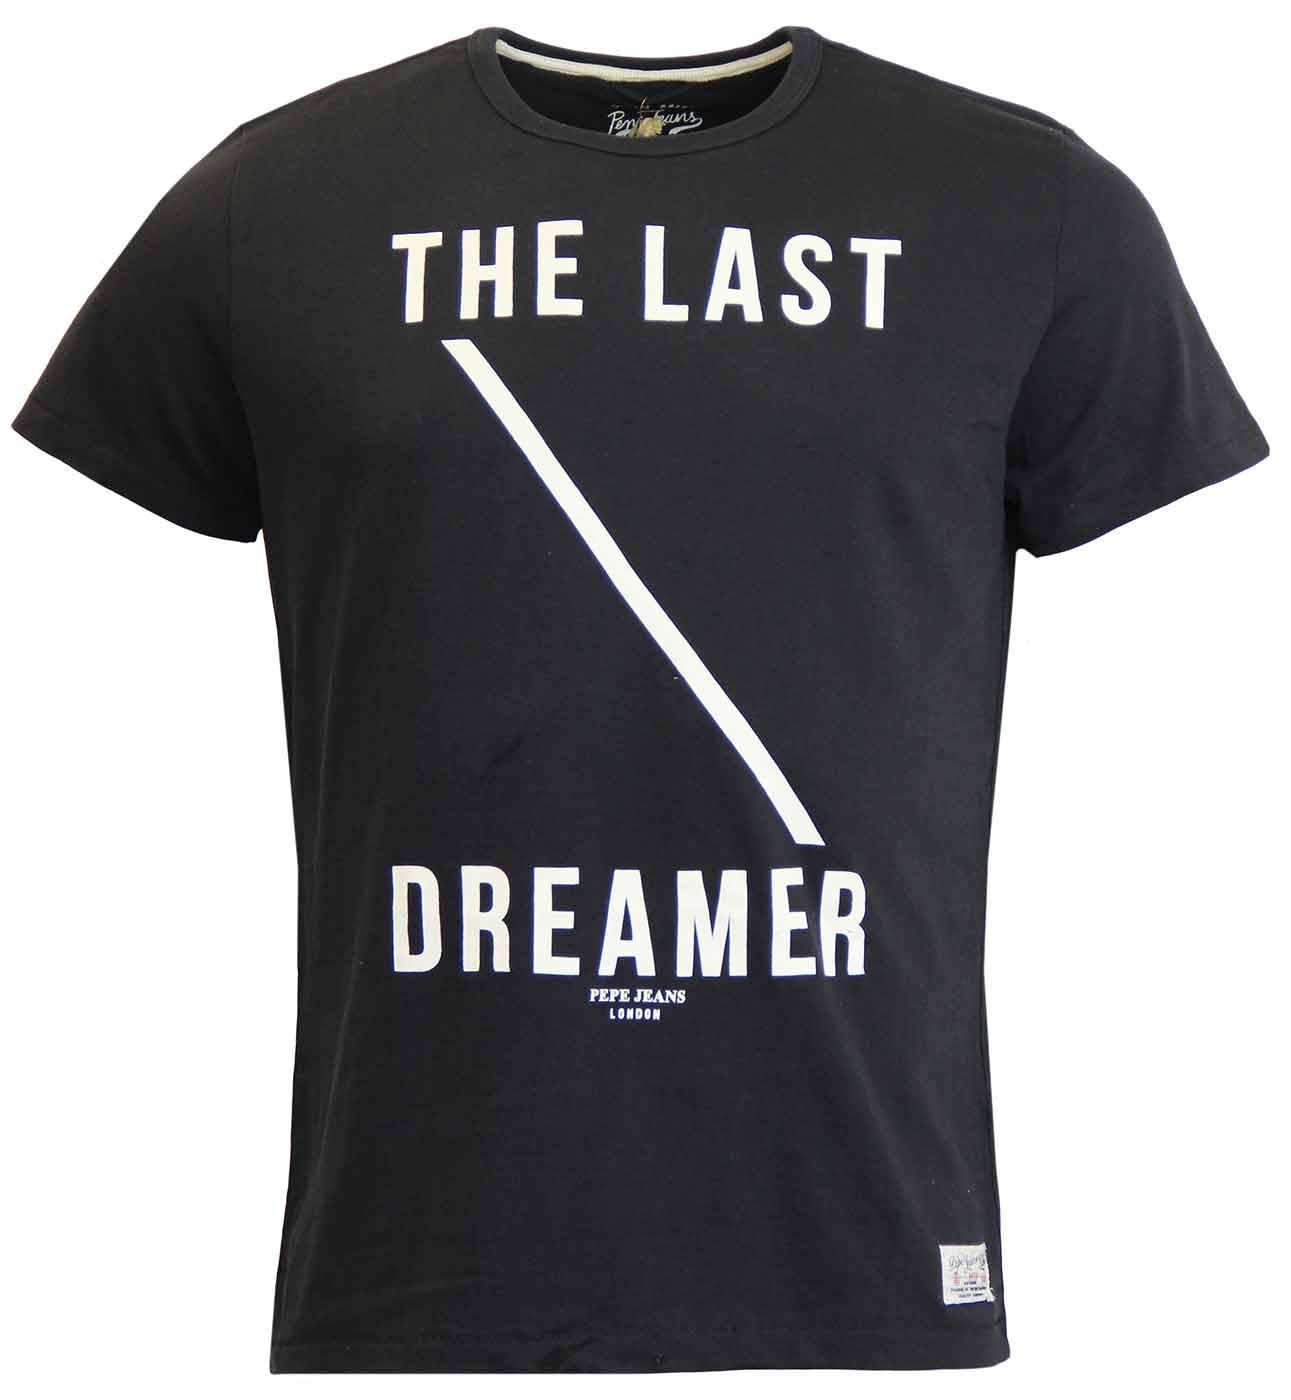 Curium PEPE JEANS Retro Last Dreamers T-Shirt